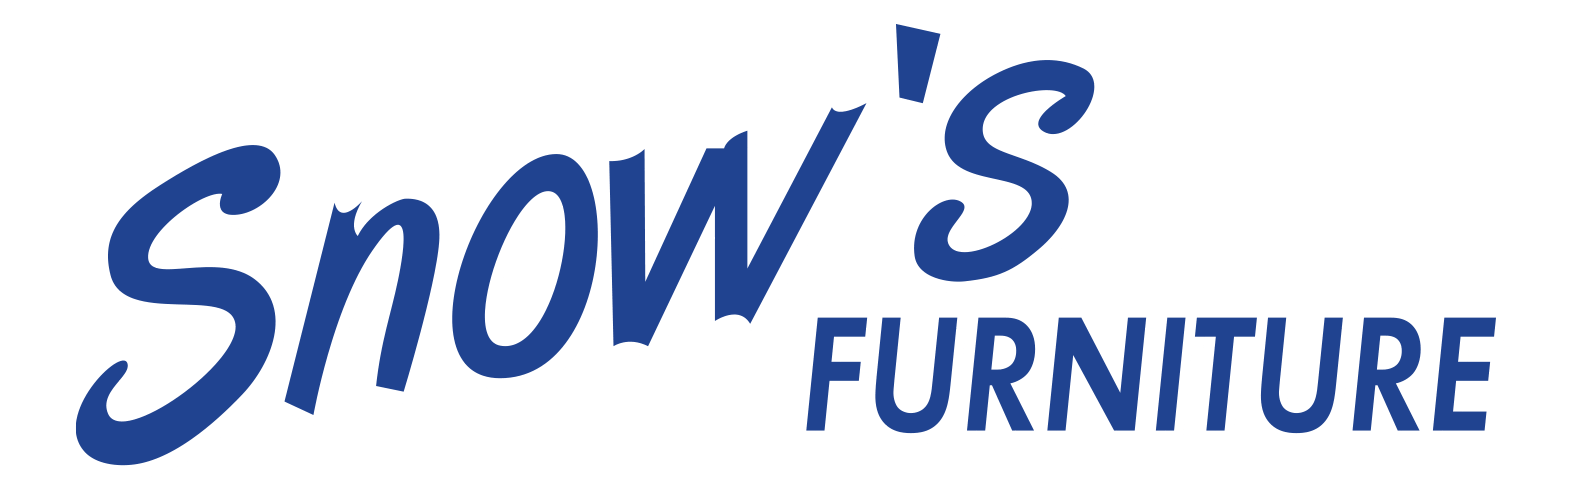 snows furniture logo